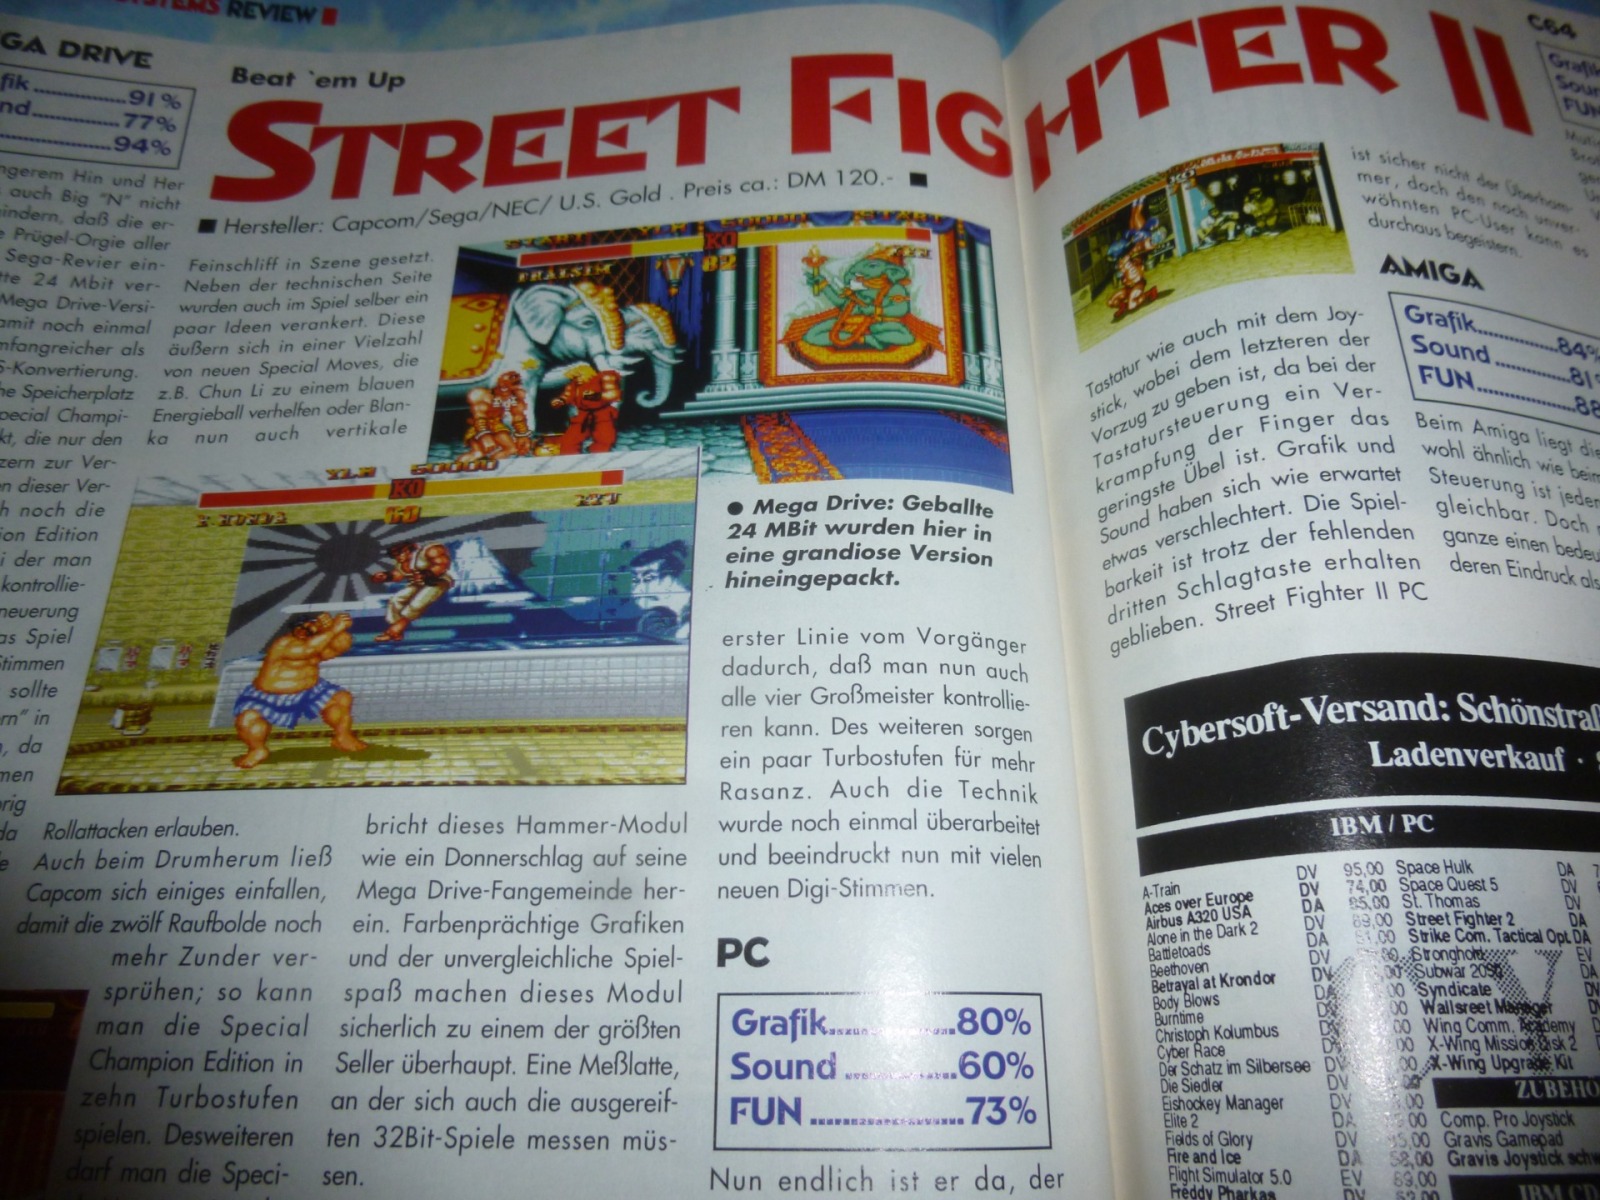 Play Time - Das Computer- und Videospiele-Magazin - Ausgabe 12/93 1993 26